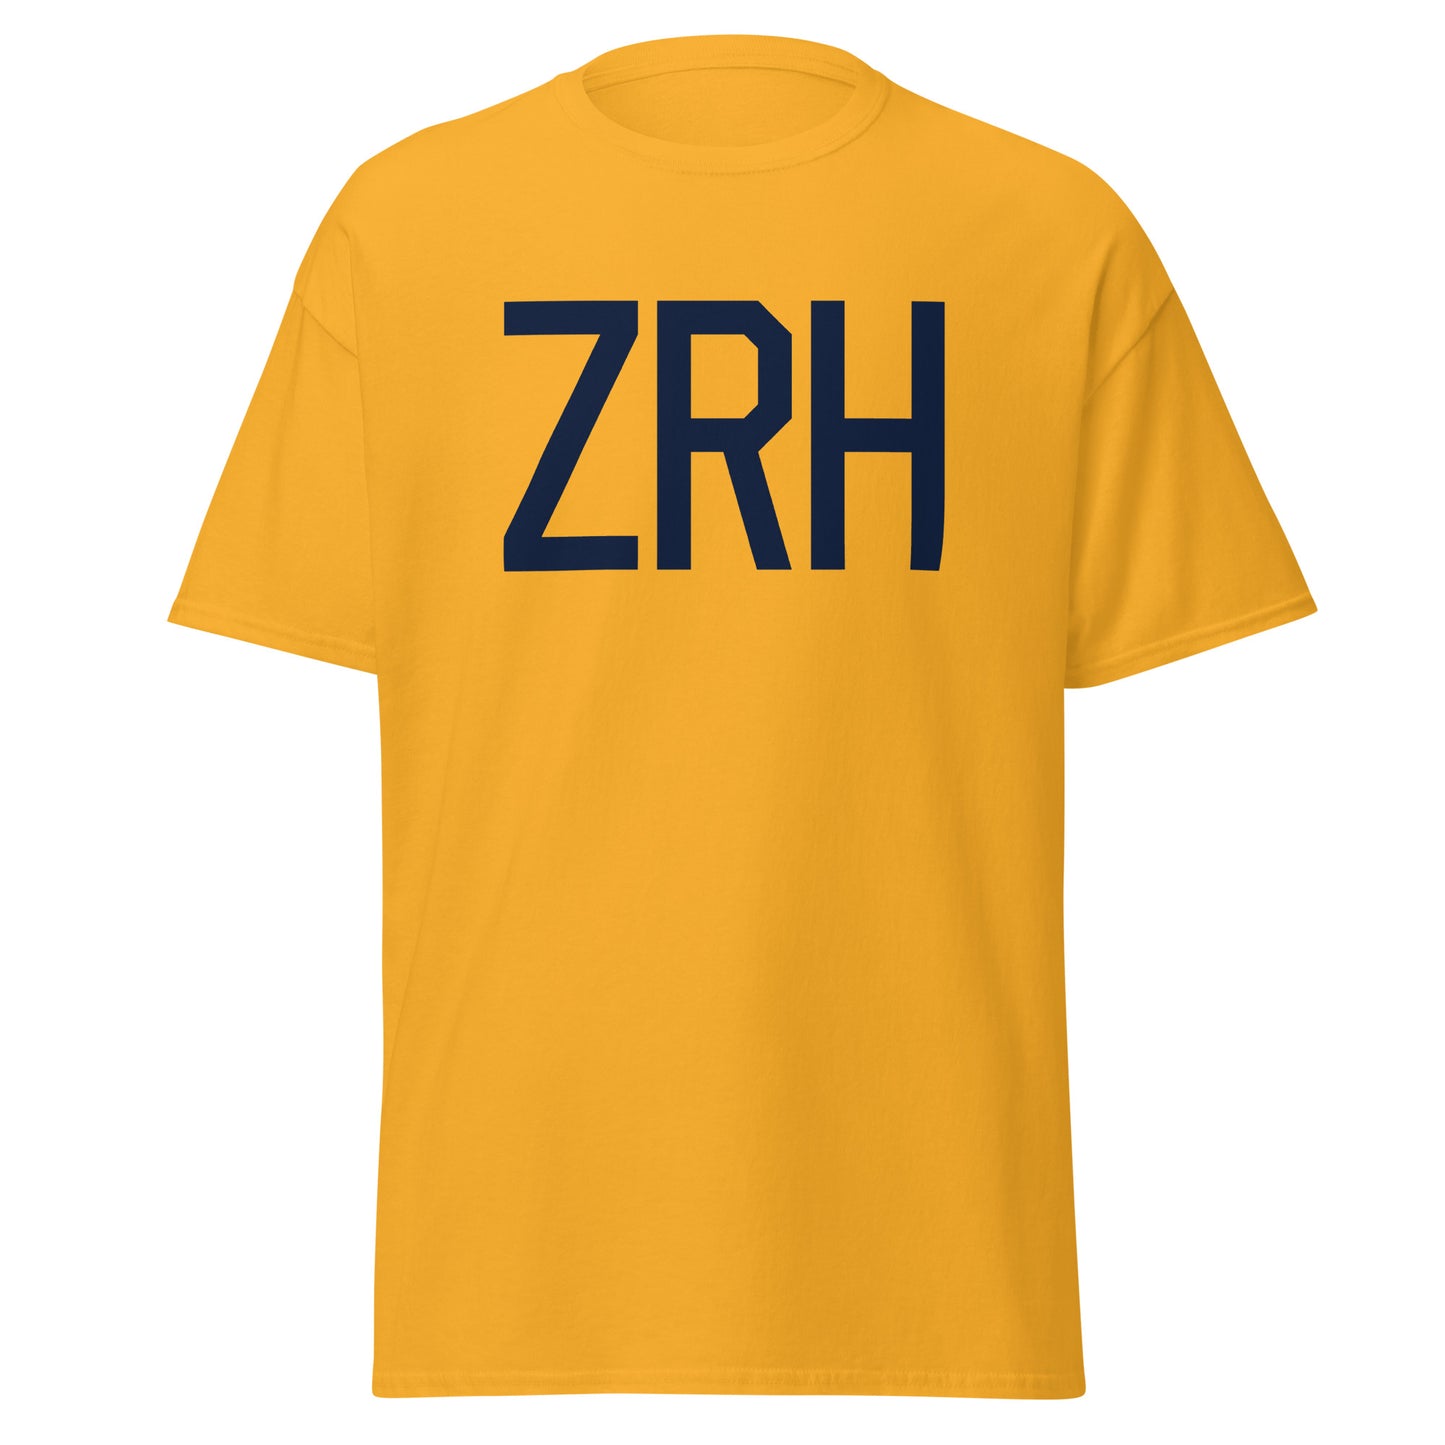 Aviation-Theme Men's T-Shirt - Navy Blue Graphic • ZRH Zurich • YHM Designs - Image 05